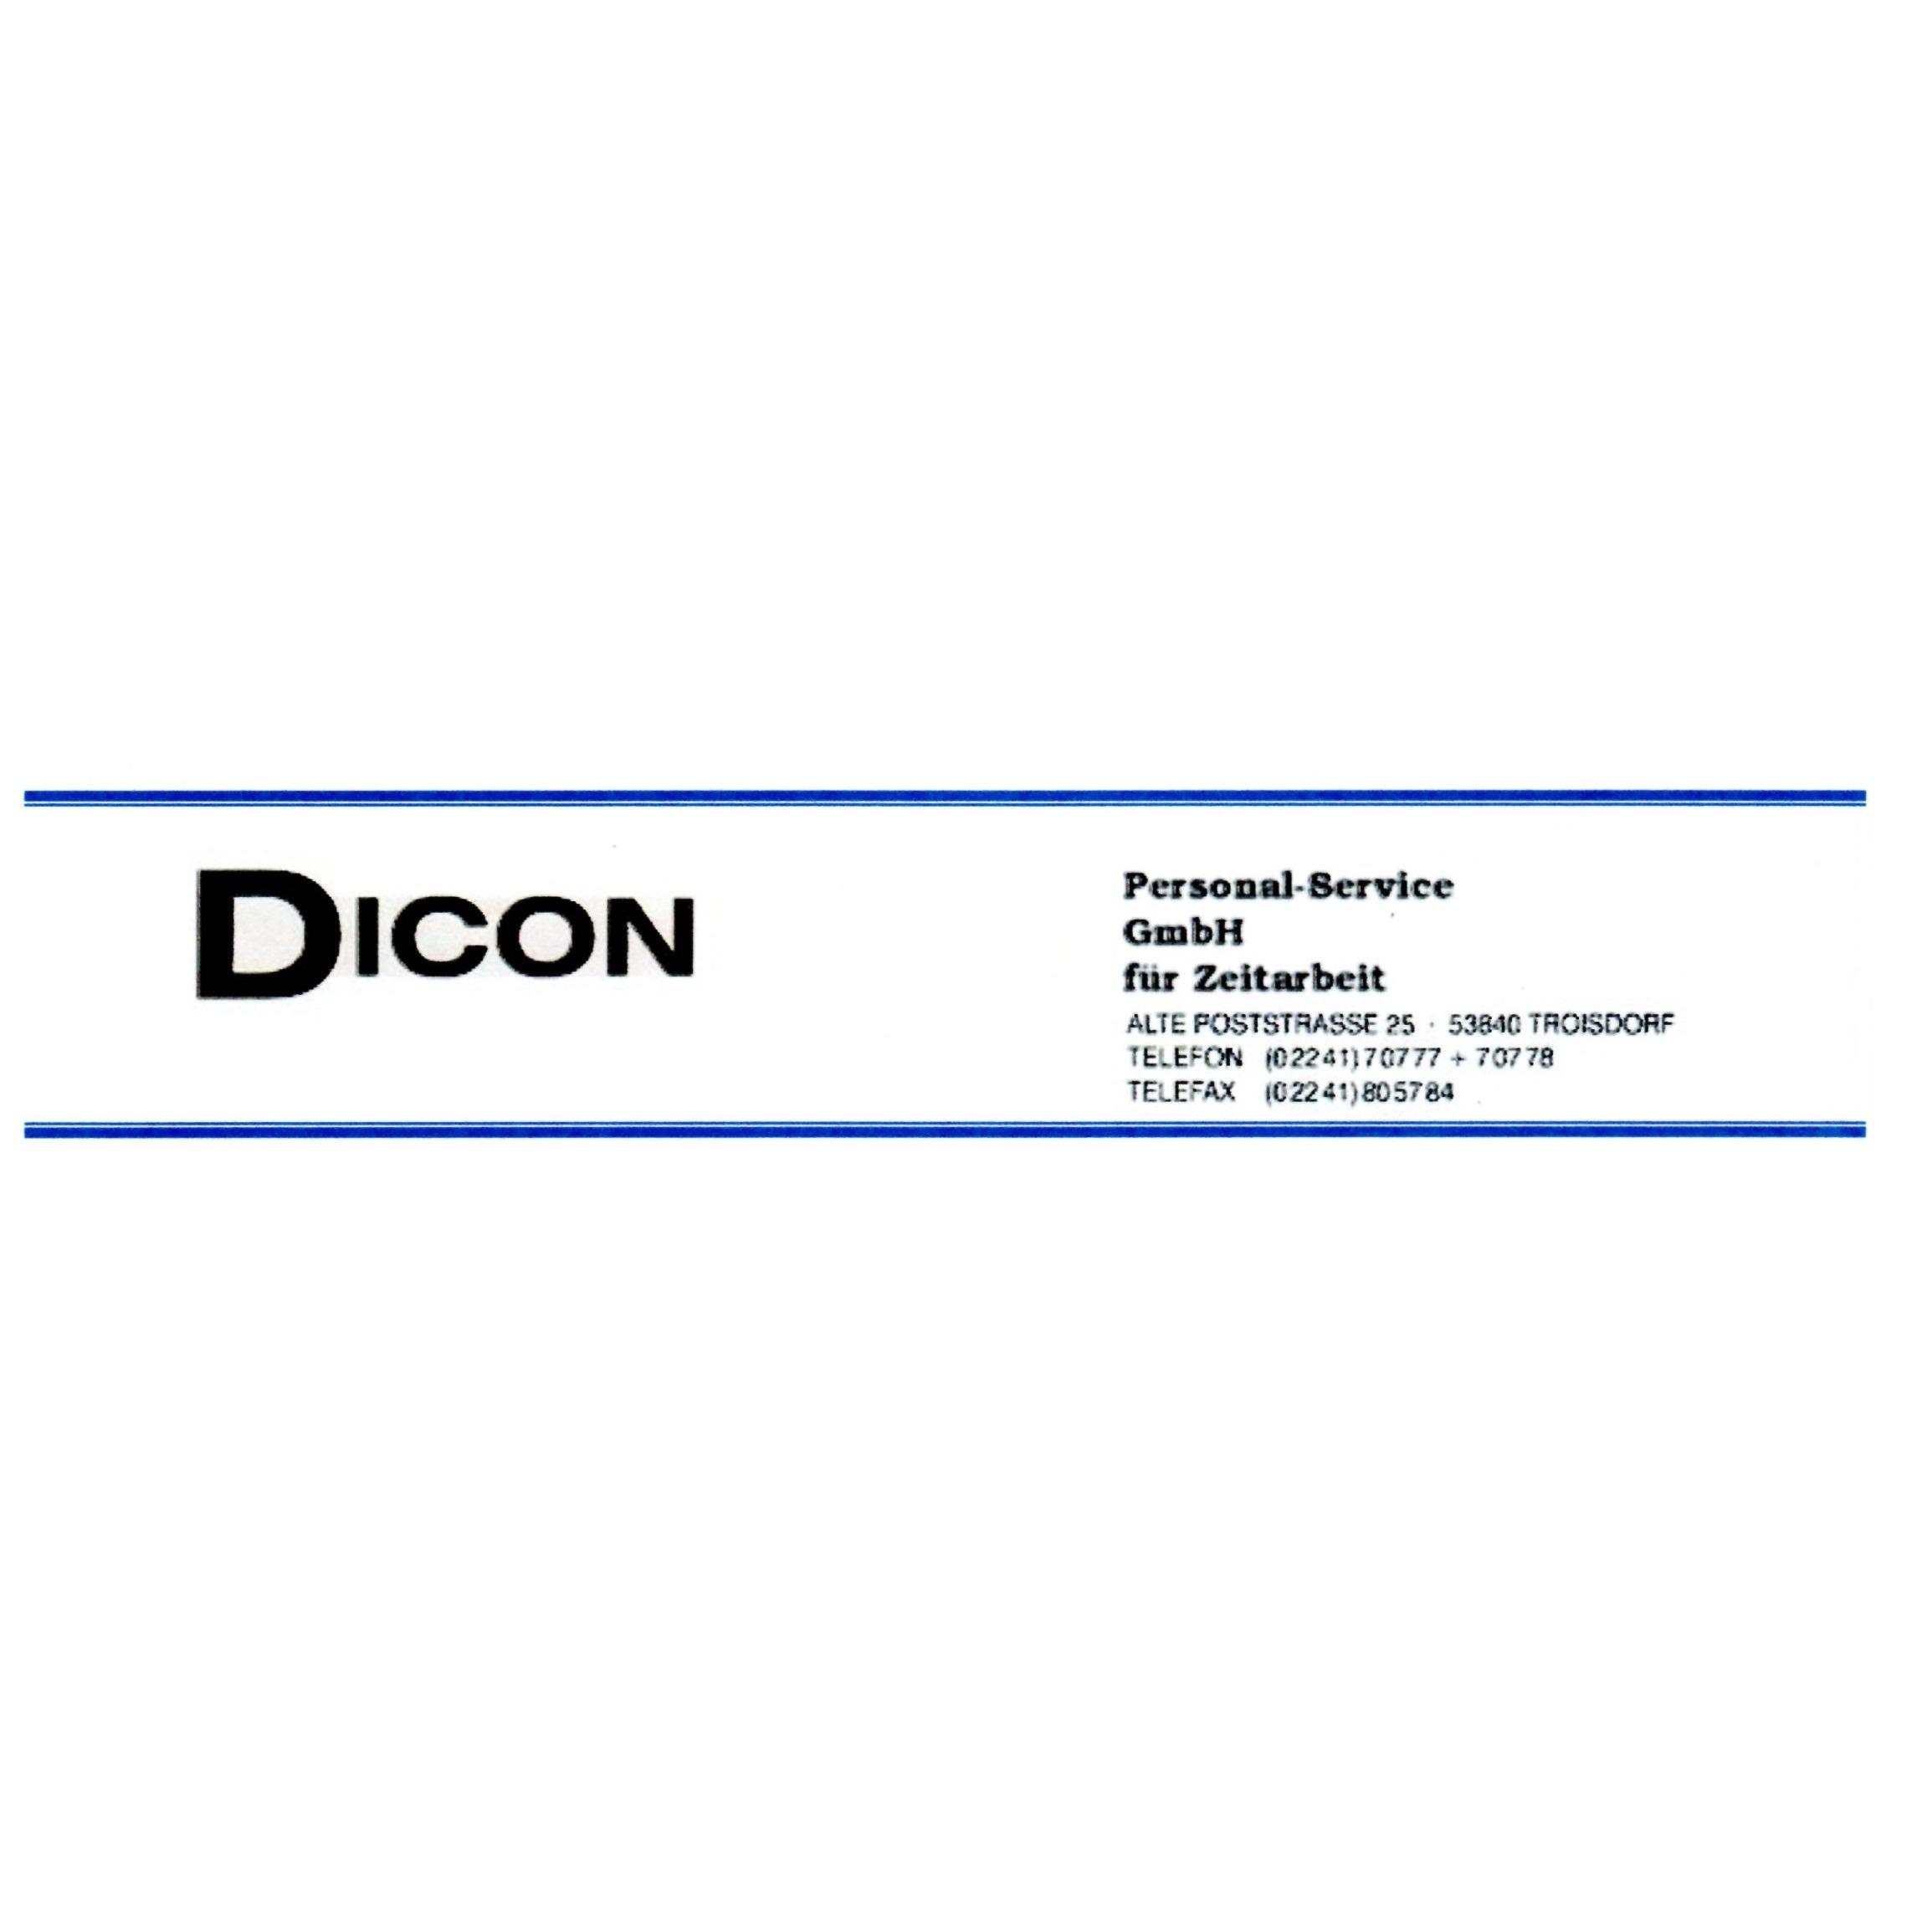 Dicon Personalservice GmbH für Zeitarbeit Logo